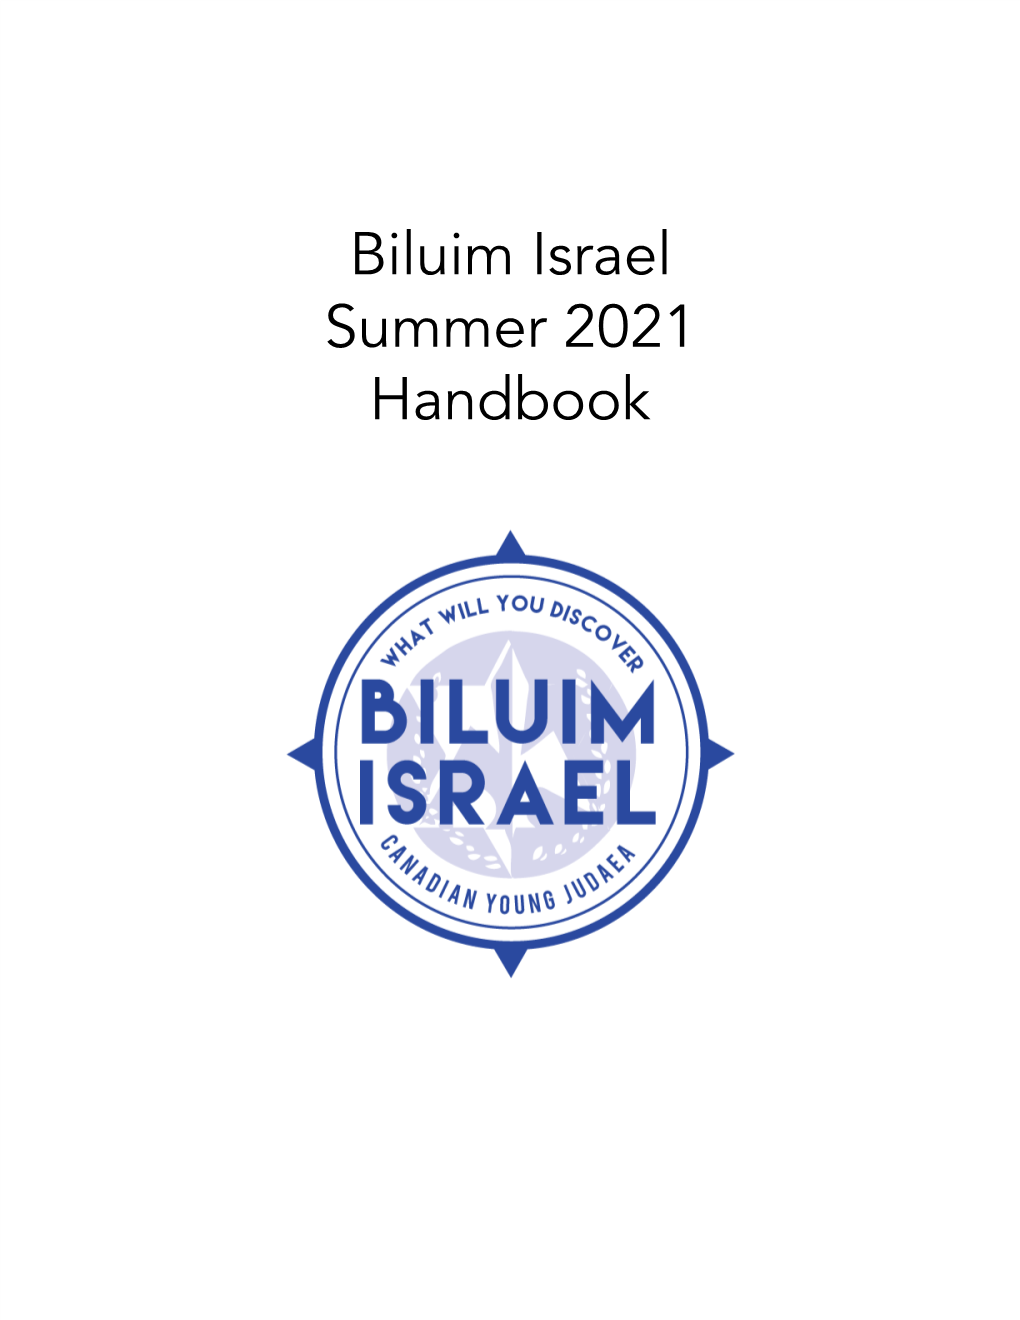 Biluim Israel Summer 2021 Handbook